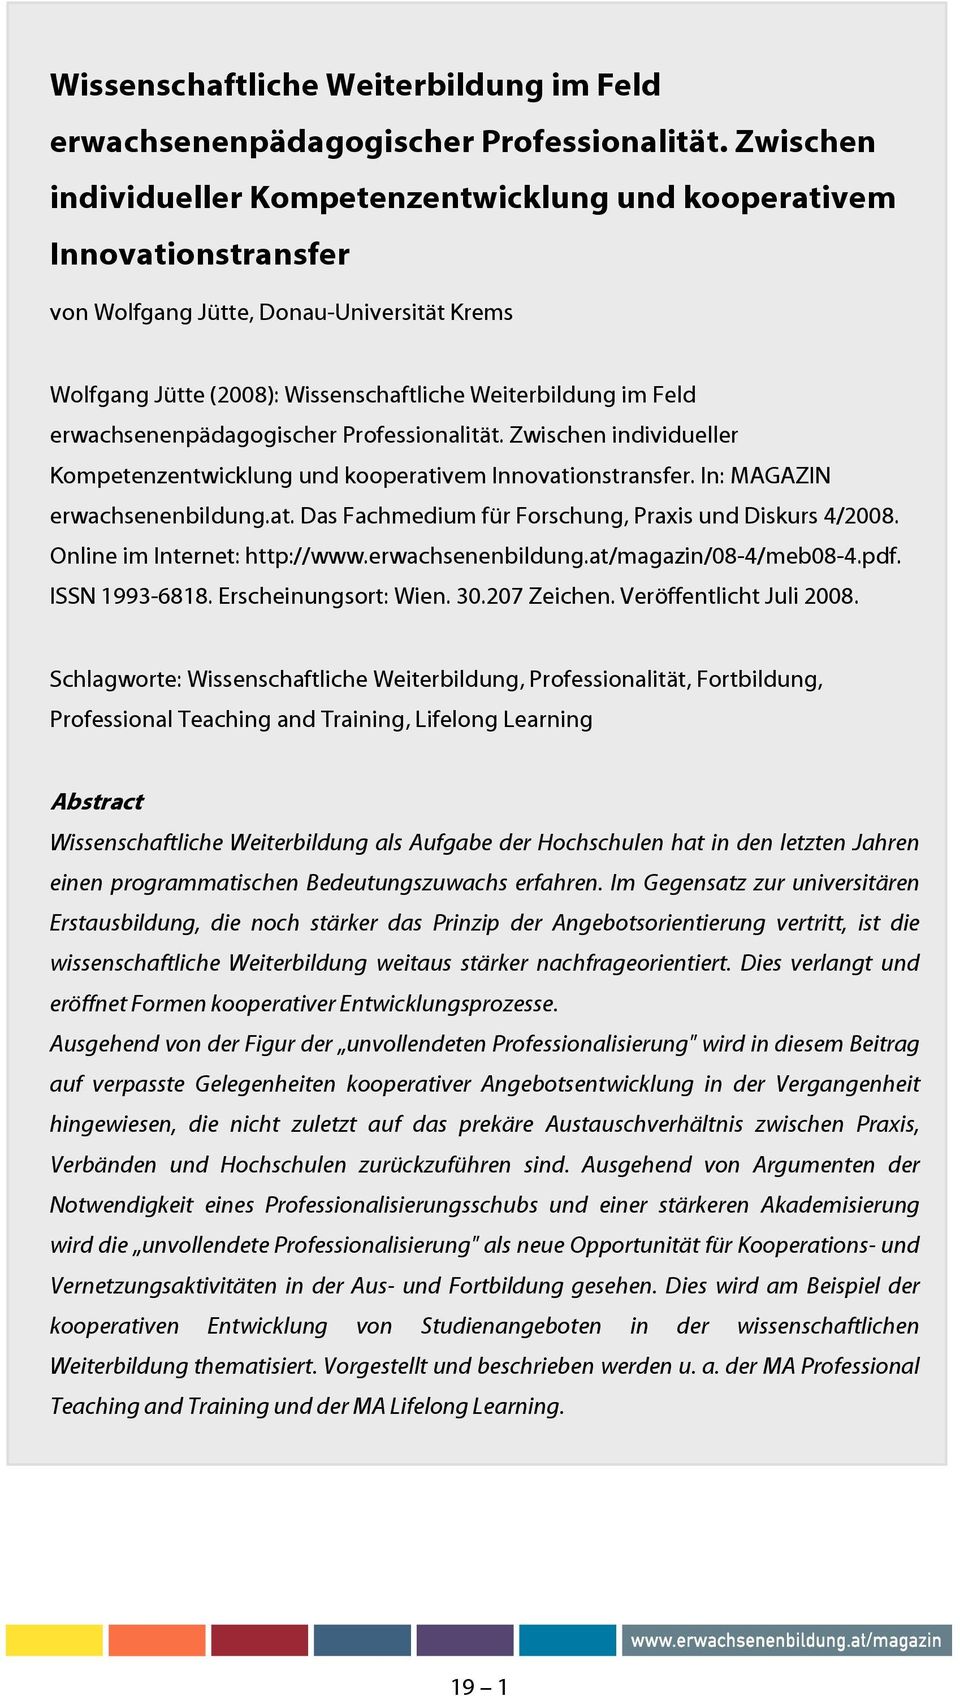 kooperativem Innovationstransfer. In: MAGAZIN erwachsenenbildung.at. Das Fachmedium für Forschung, Praxis und Diskurs 4/2008. Online im Internet: http://www.erwachsenenbildung.at/magazin/08-4/meb08-4.